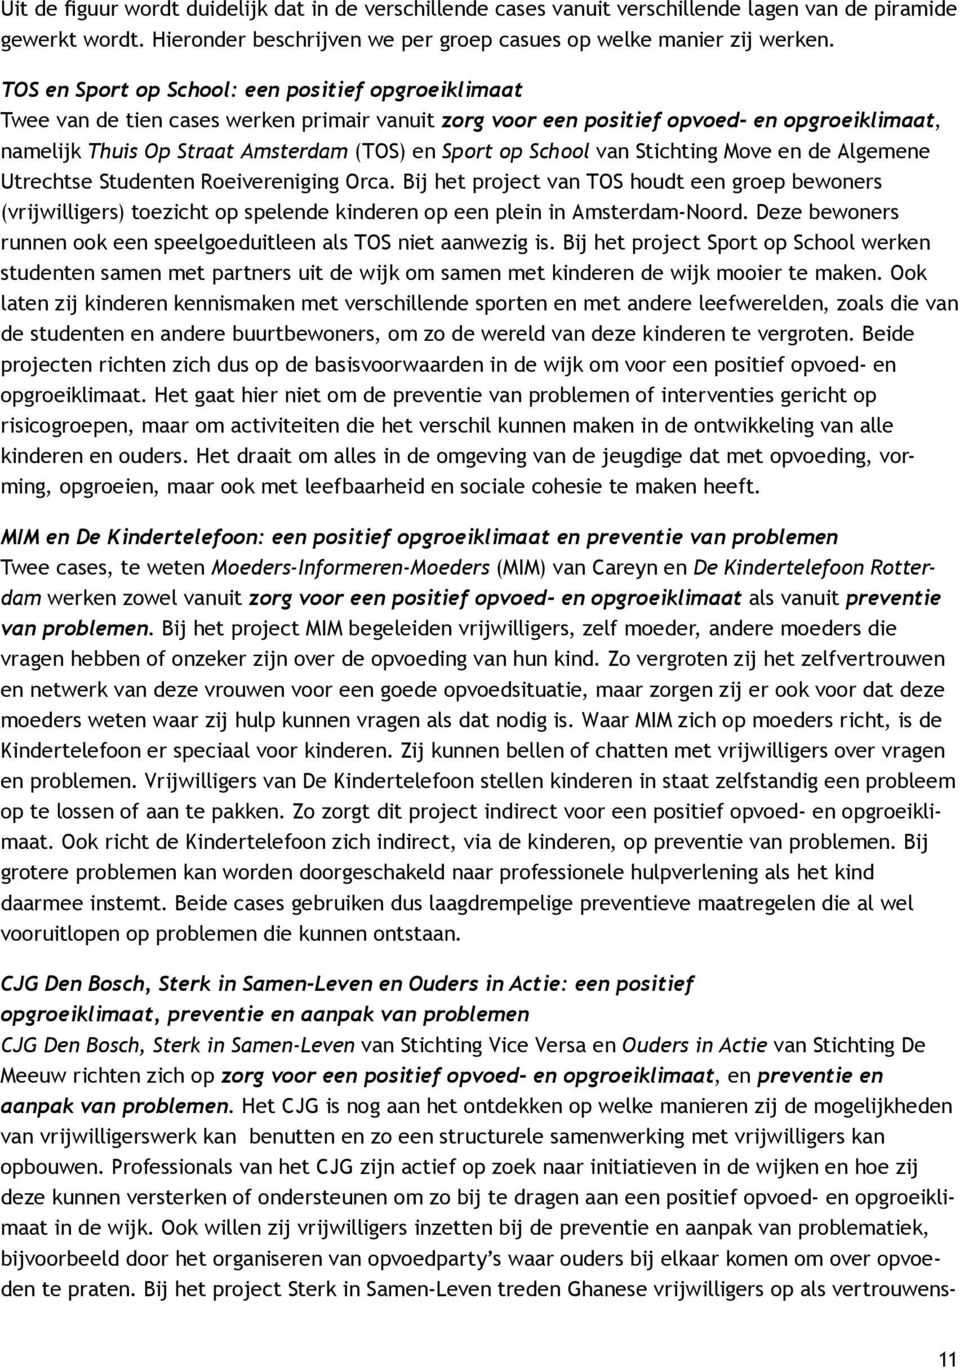 School van Stichting Move en de Algemene Utrechtse Studenten Roeivereniging Orca.